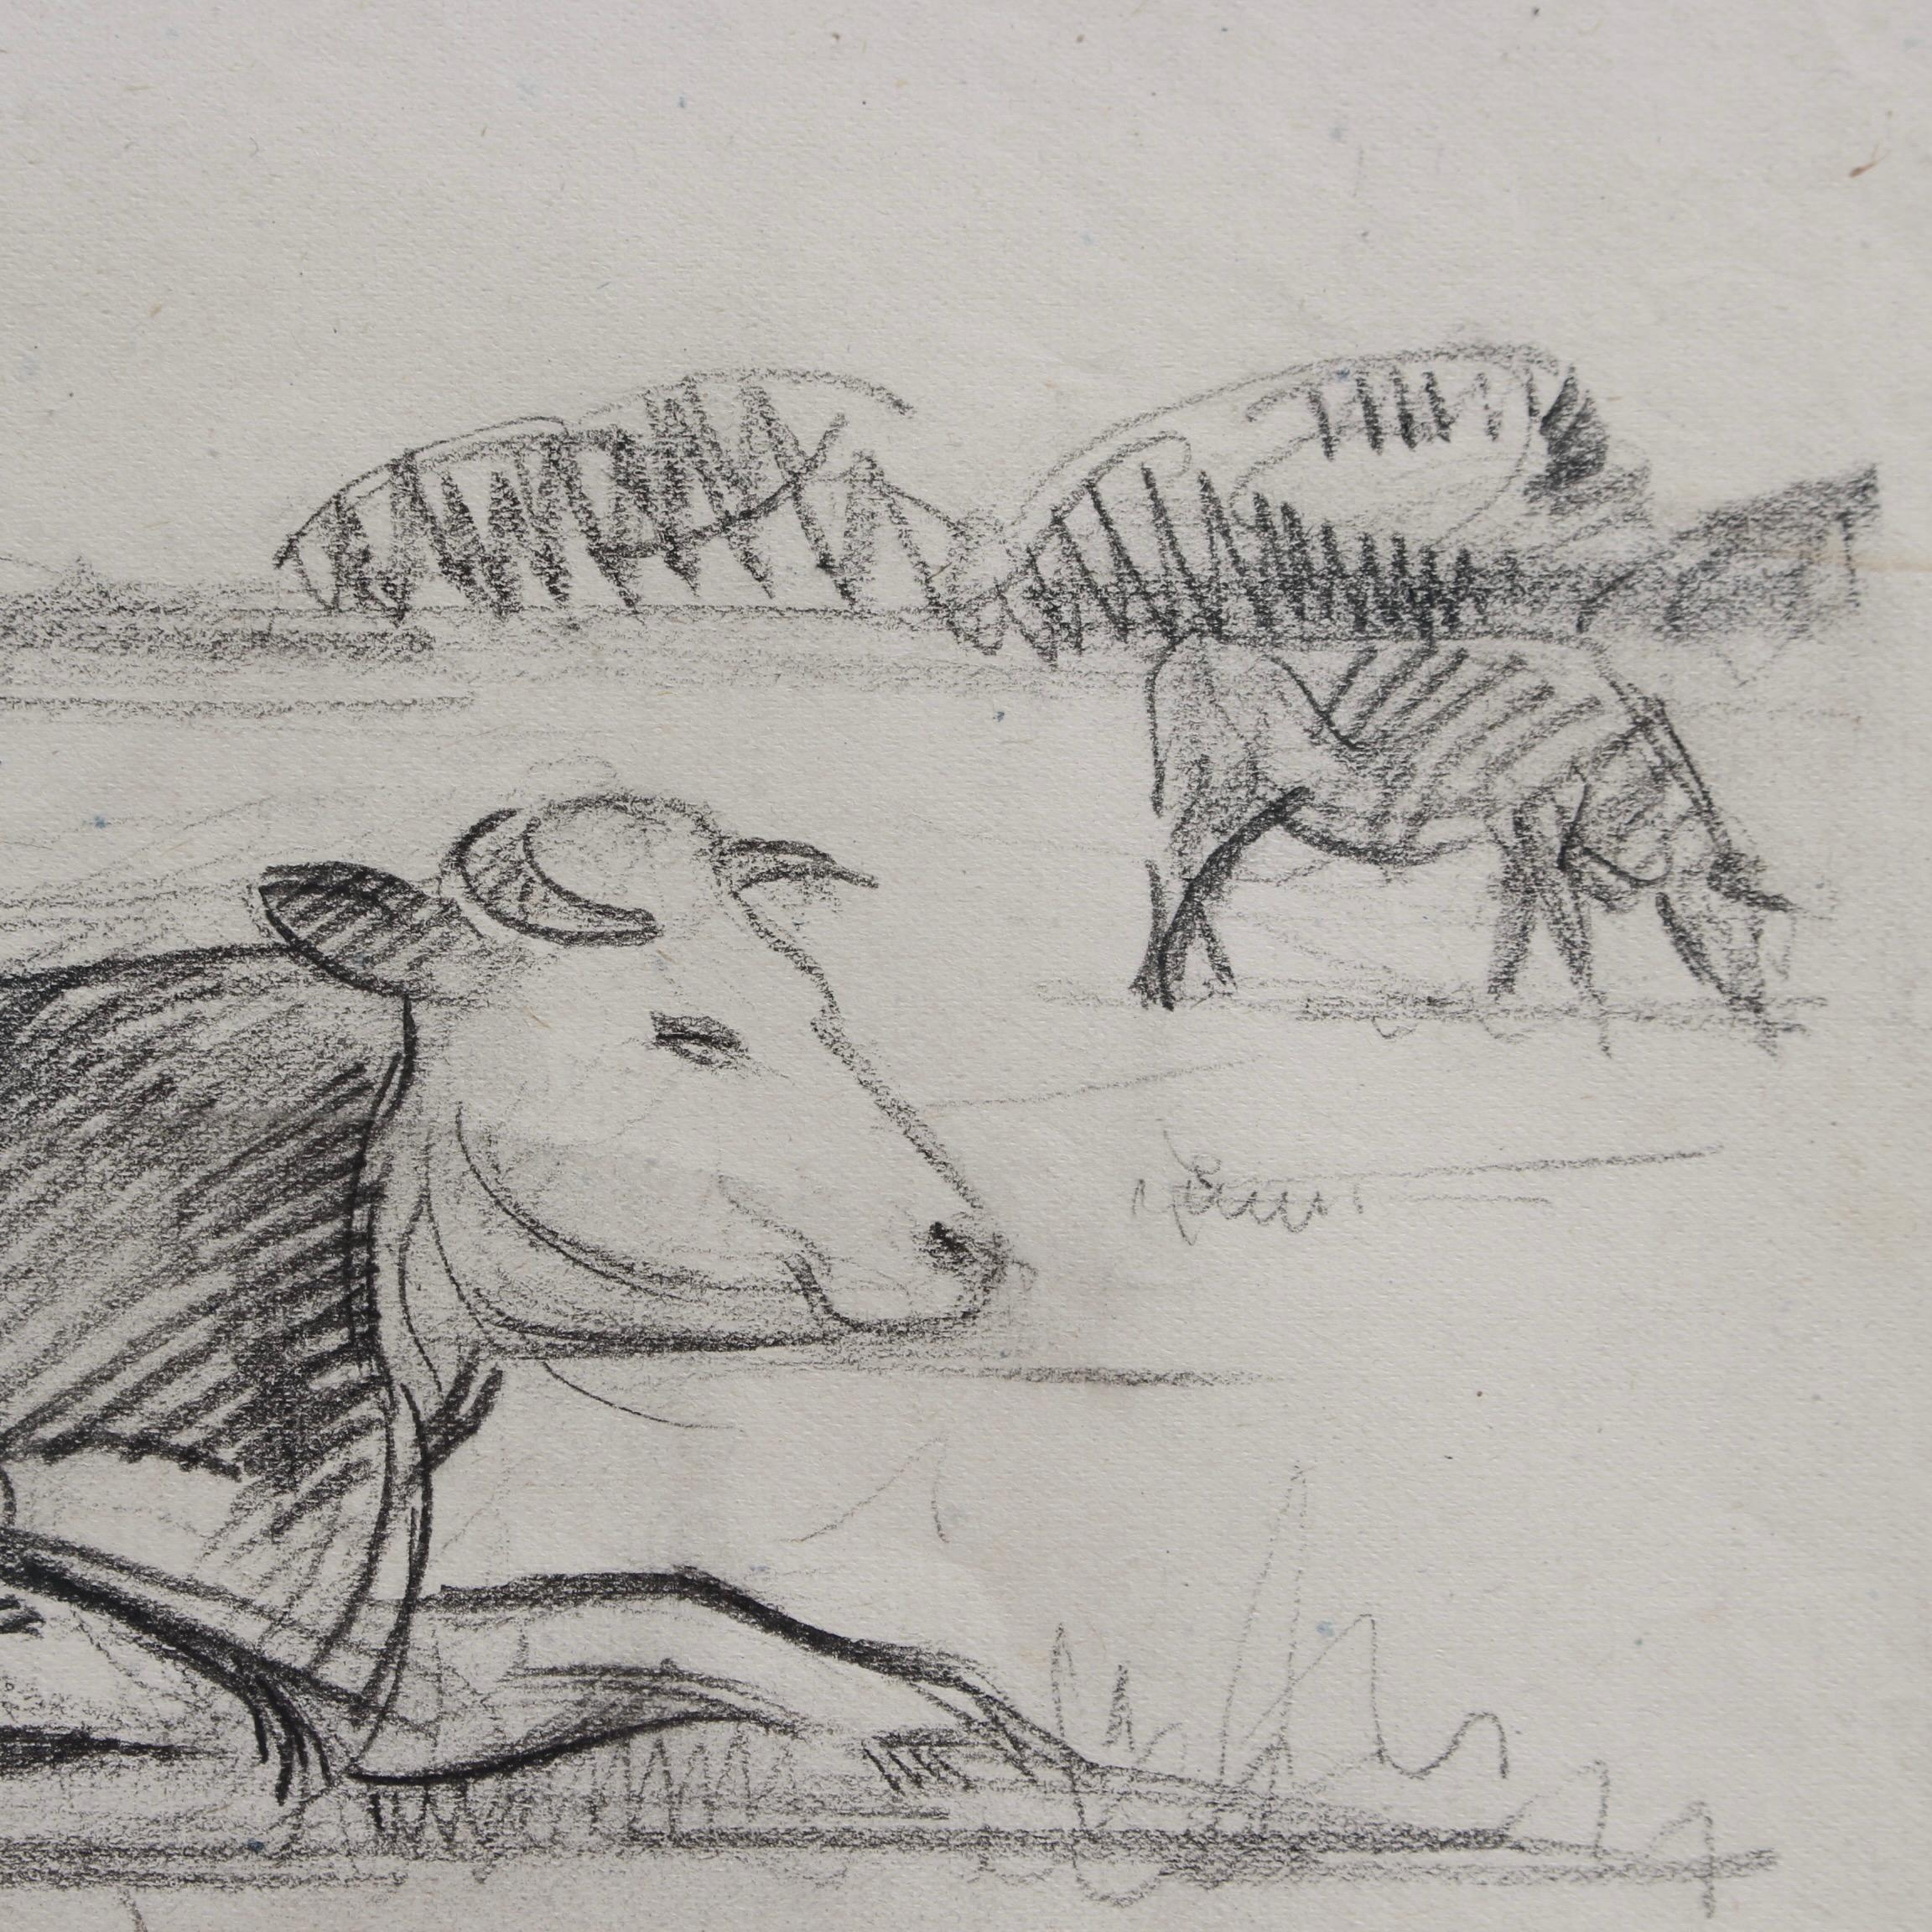 Portrait of a Bull in a Field 4